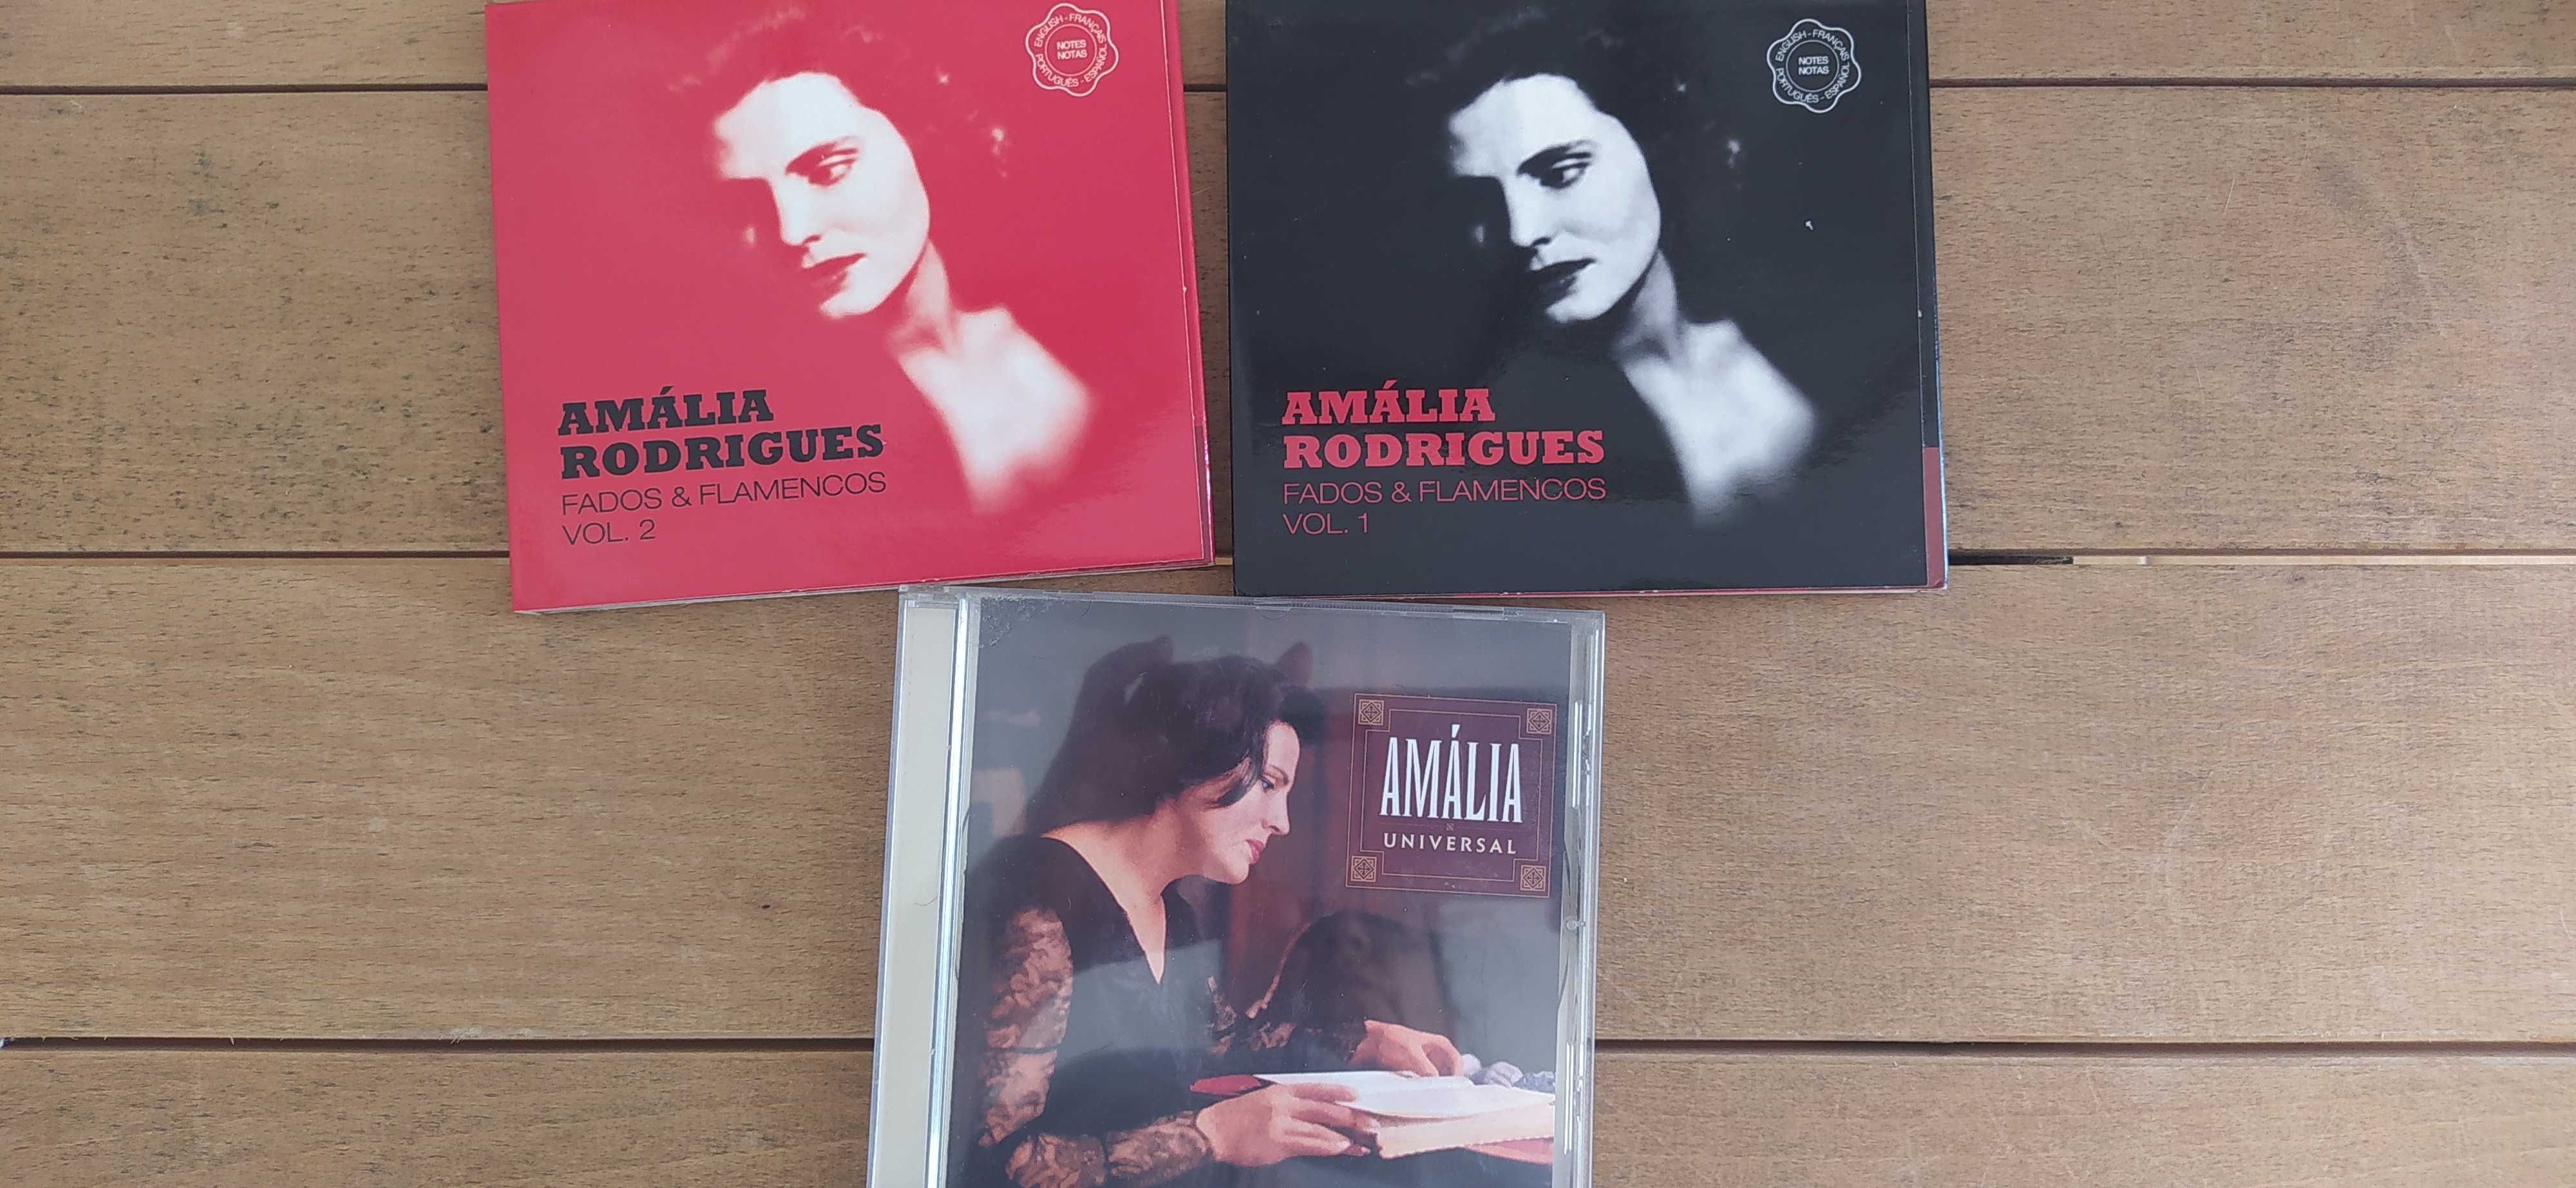 Vários CDs Amália